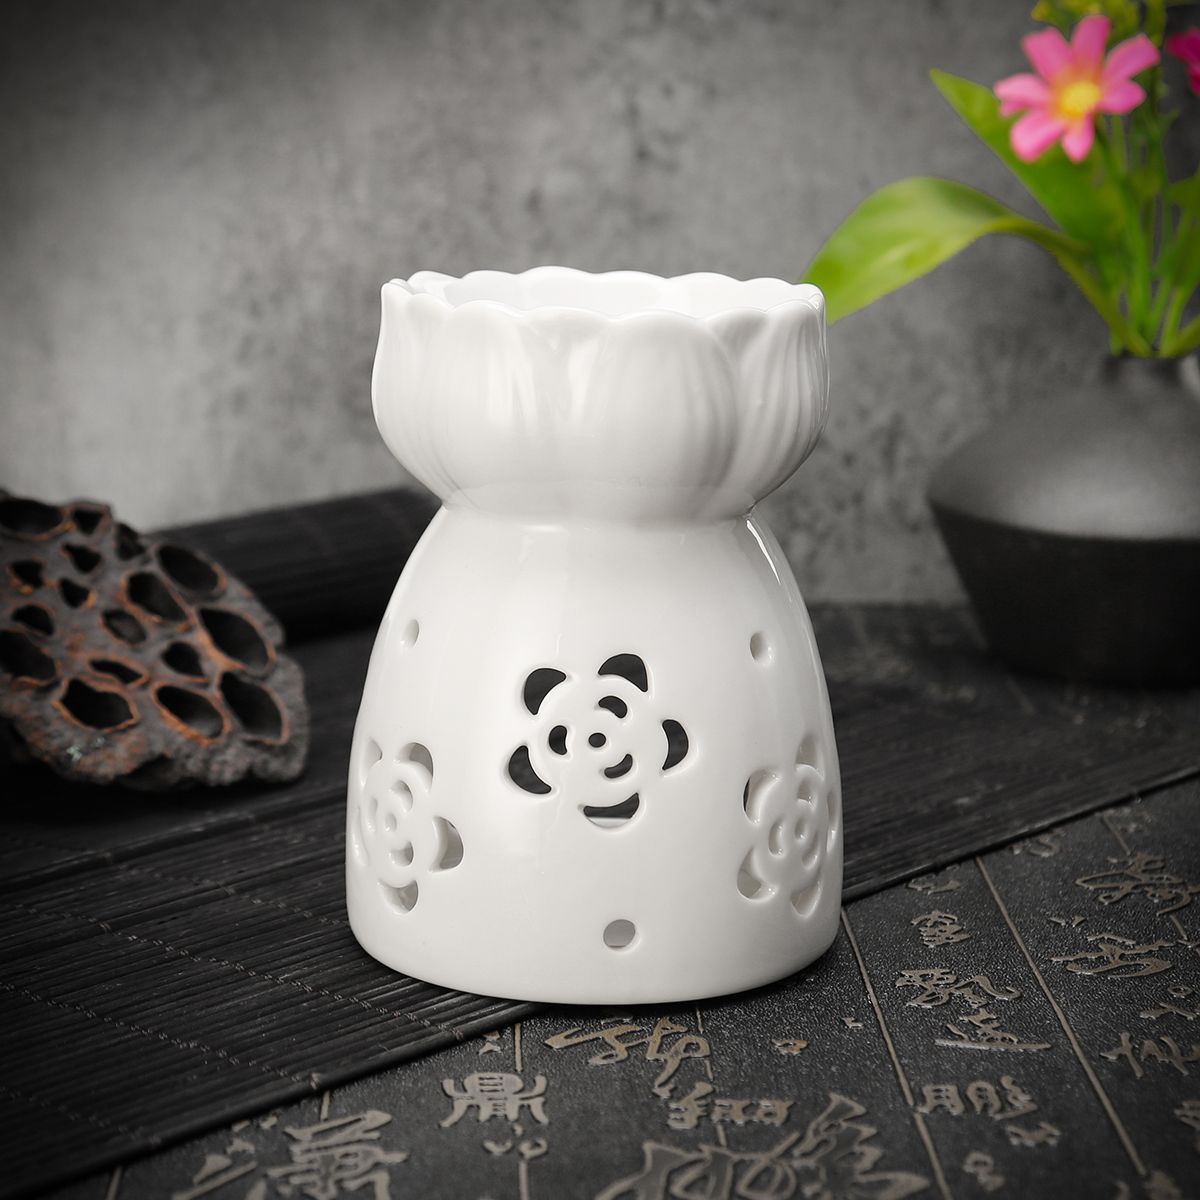 Lotus-Flower-Ceramic-Oil-Incense-Burner-Tea-Light-Holder-Home-Fragrance-White-1527638